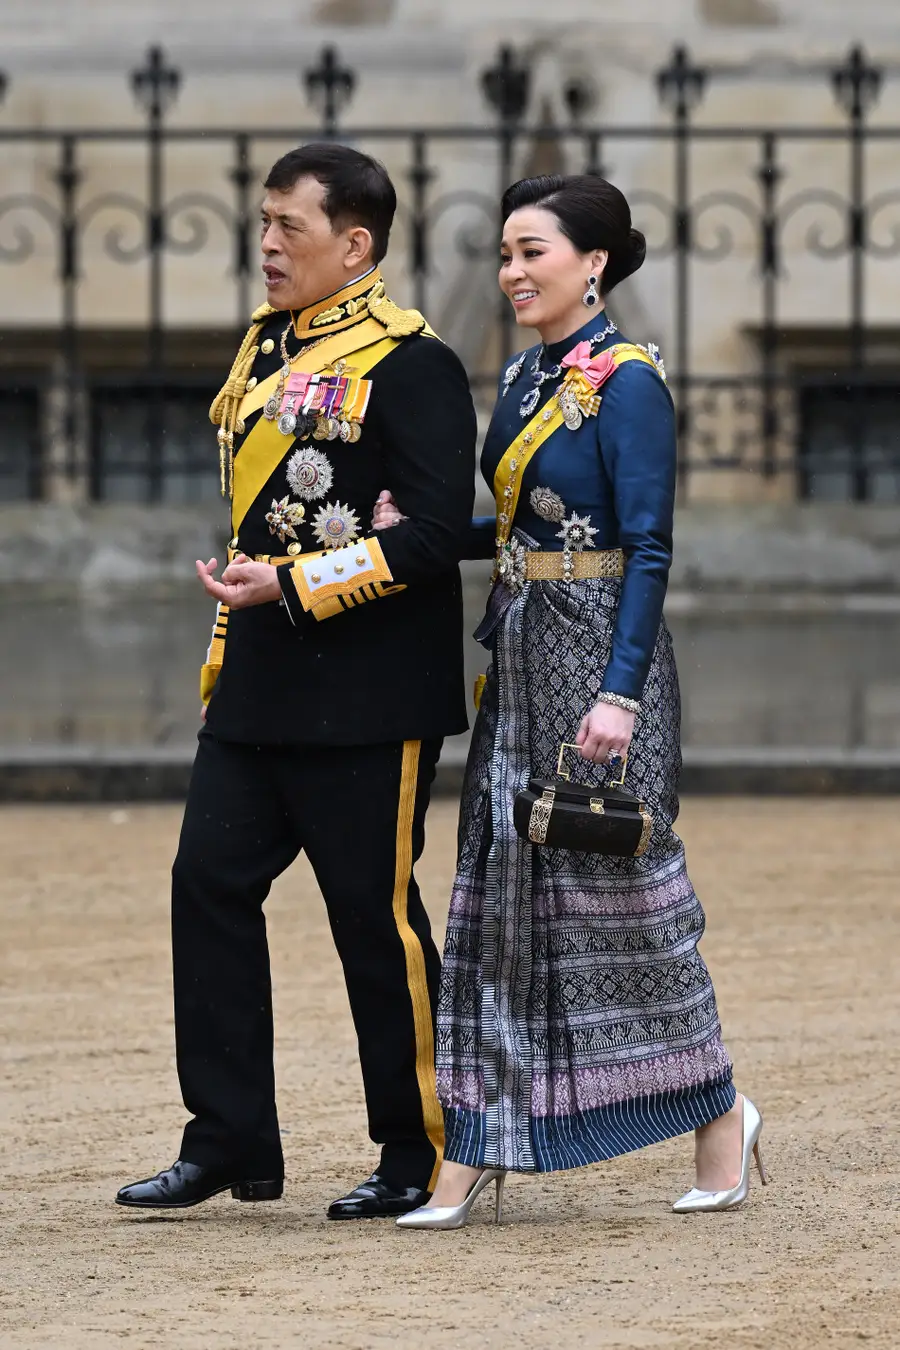 พลเอกหญิง สมเด็จพระนางเจ้าสุทิดา พัชรสุธาพิมลลักษณ พระบรมราชินี (Queen Suthida of Thailand)